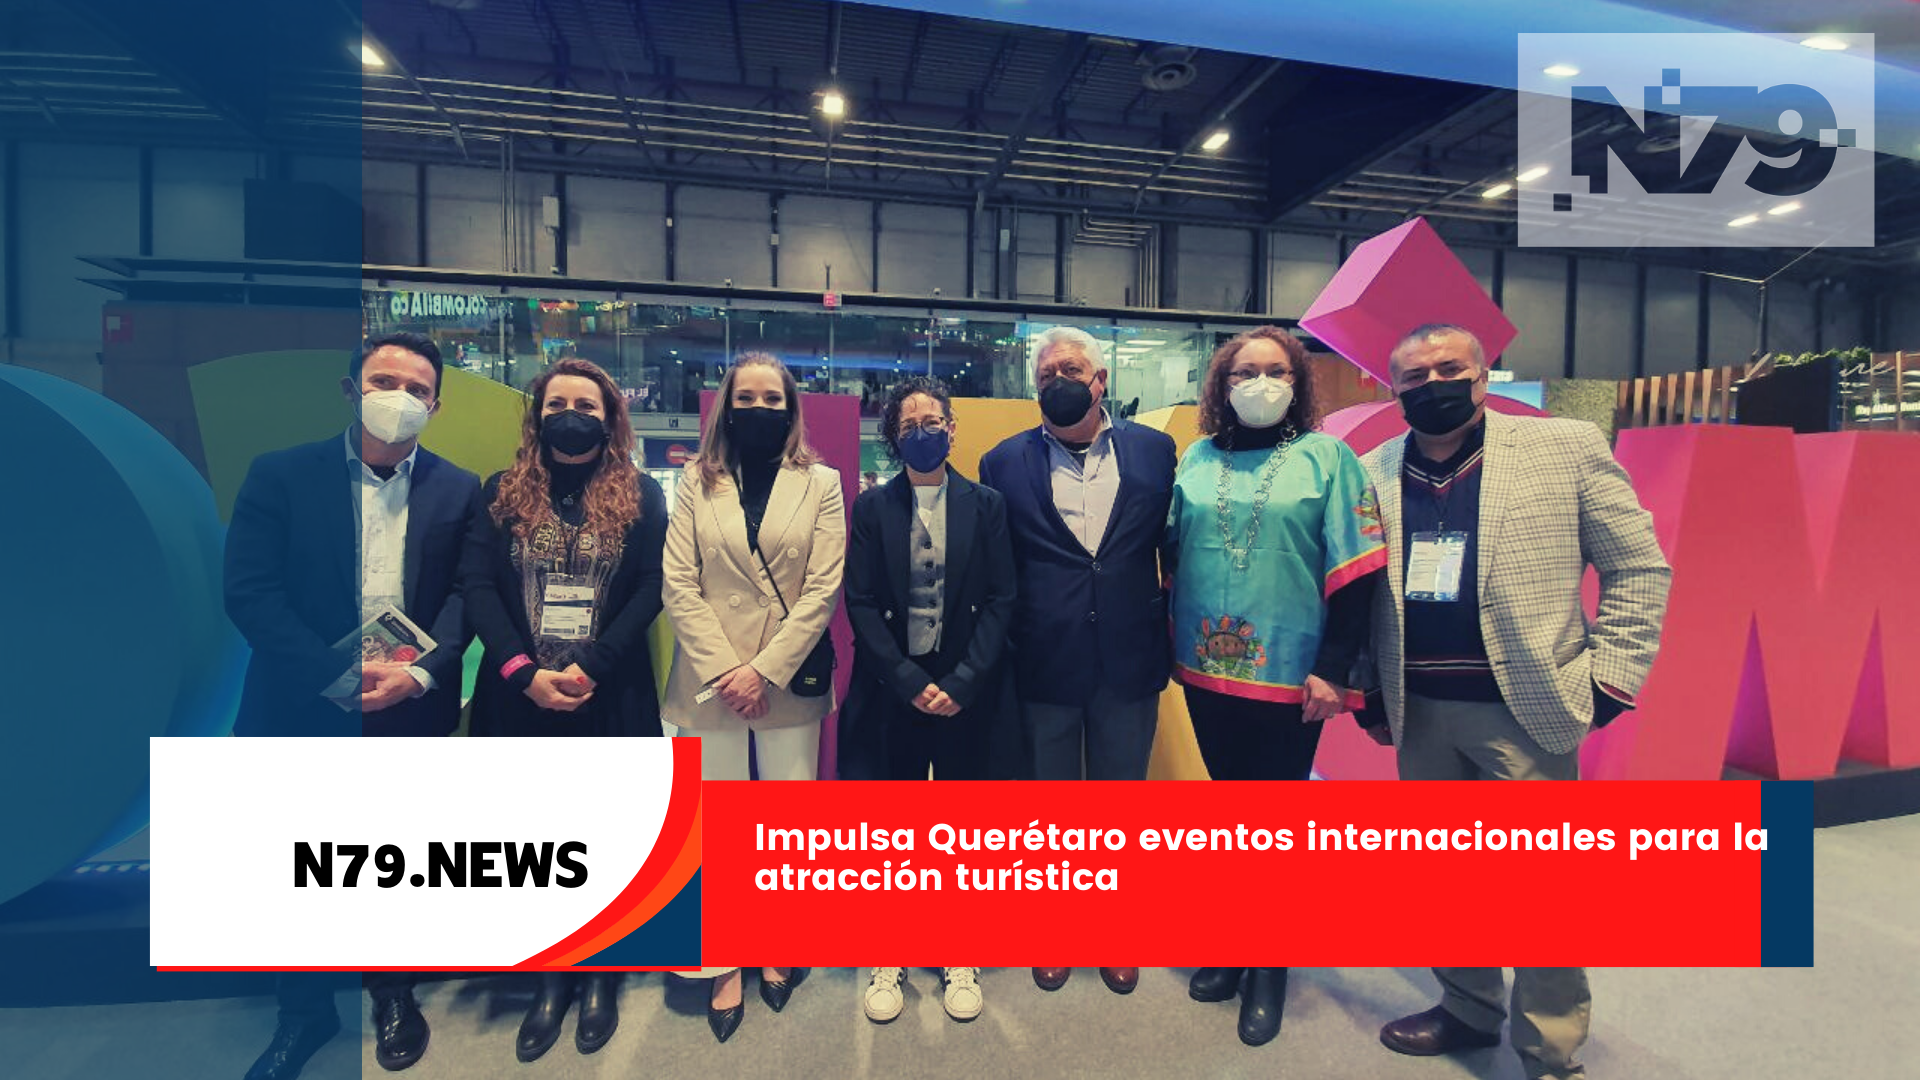 Impulsa Querétaro eventos internacionales para la atracción turística